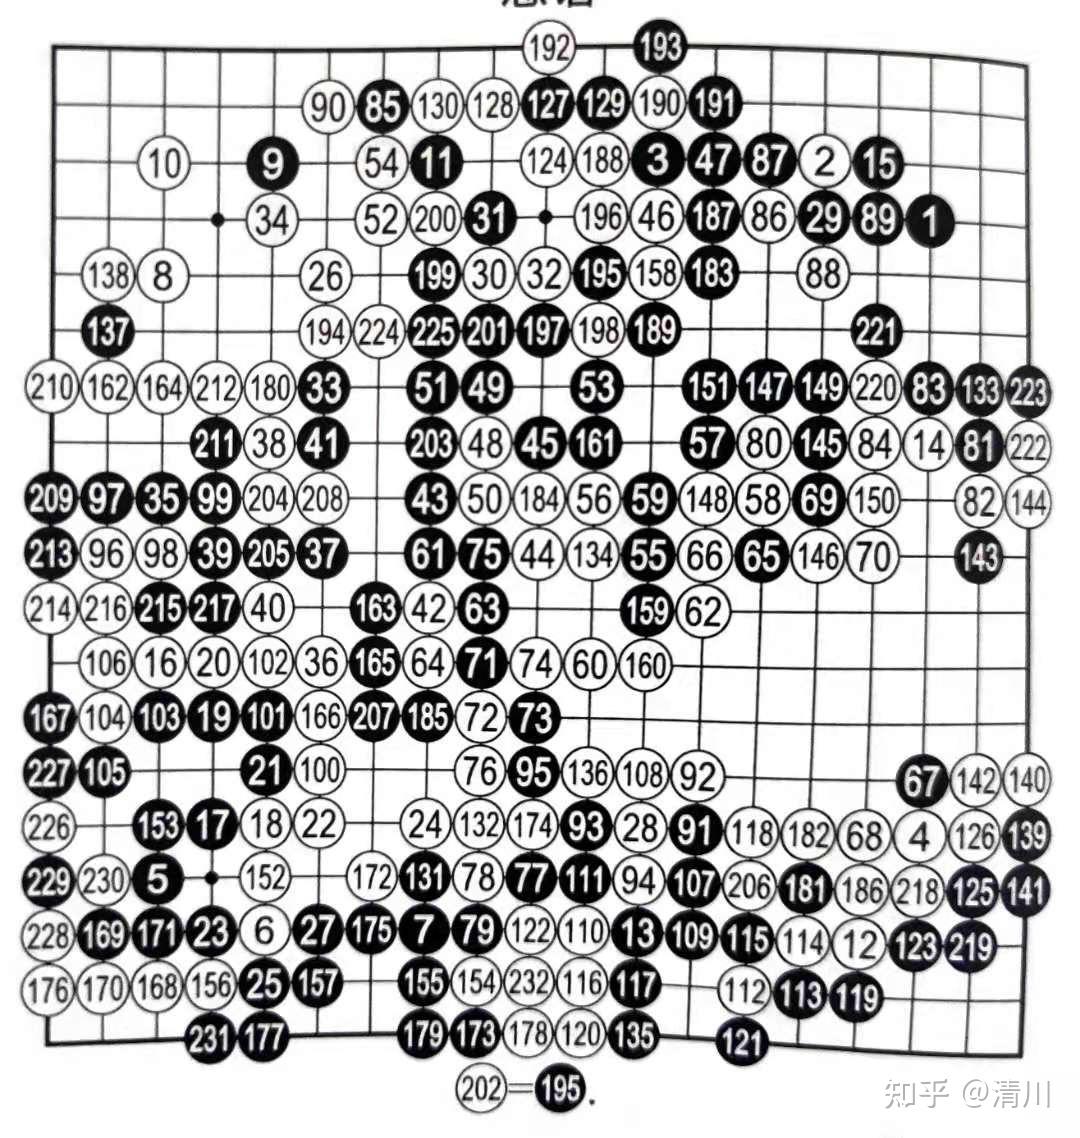 1919围棋在线棋谱AI研究功能上线了 - 知乎